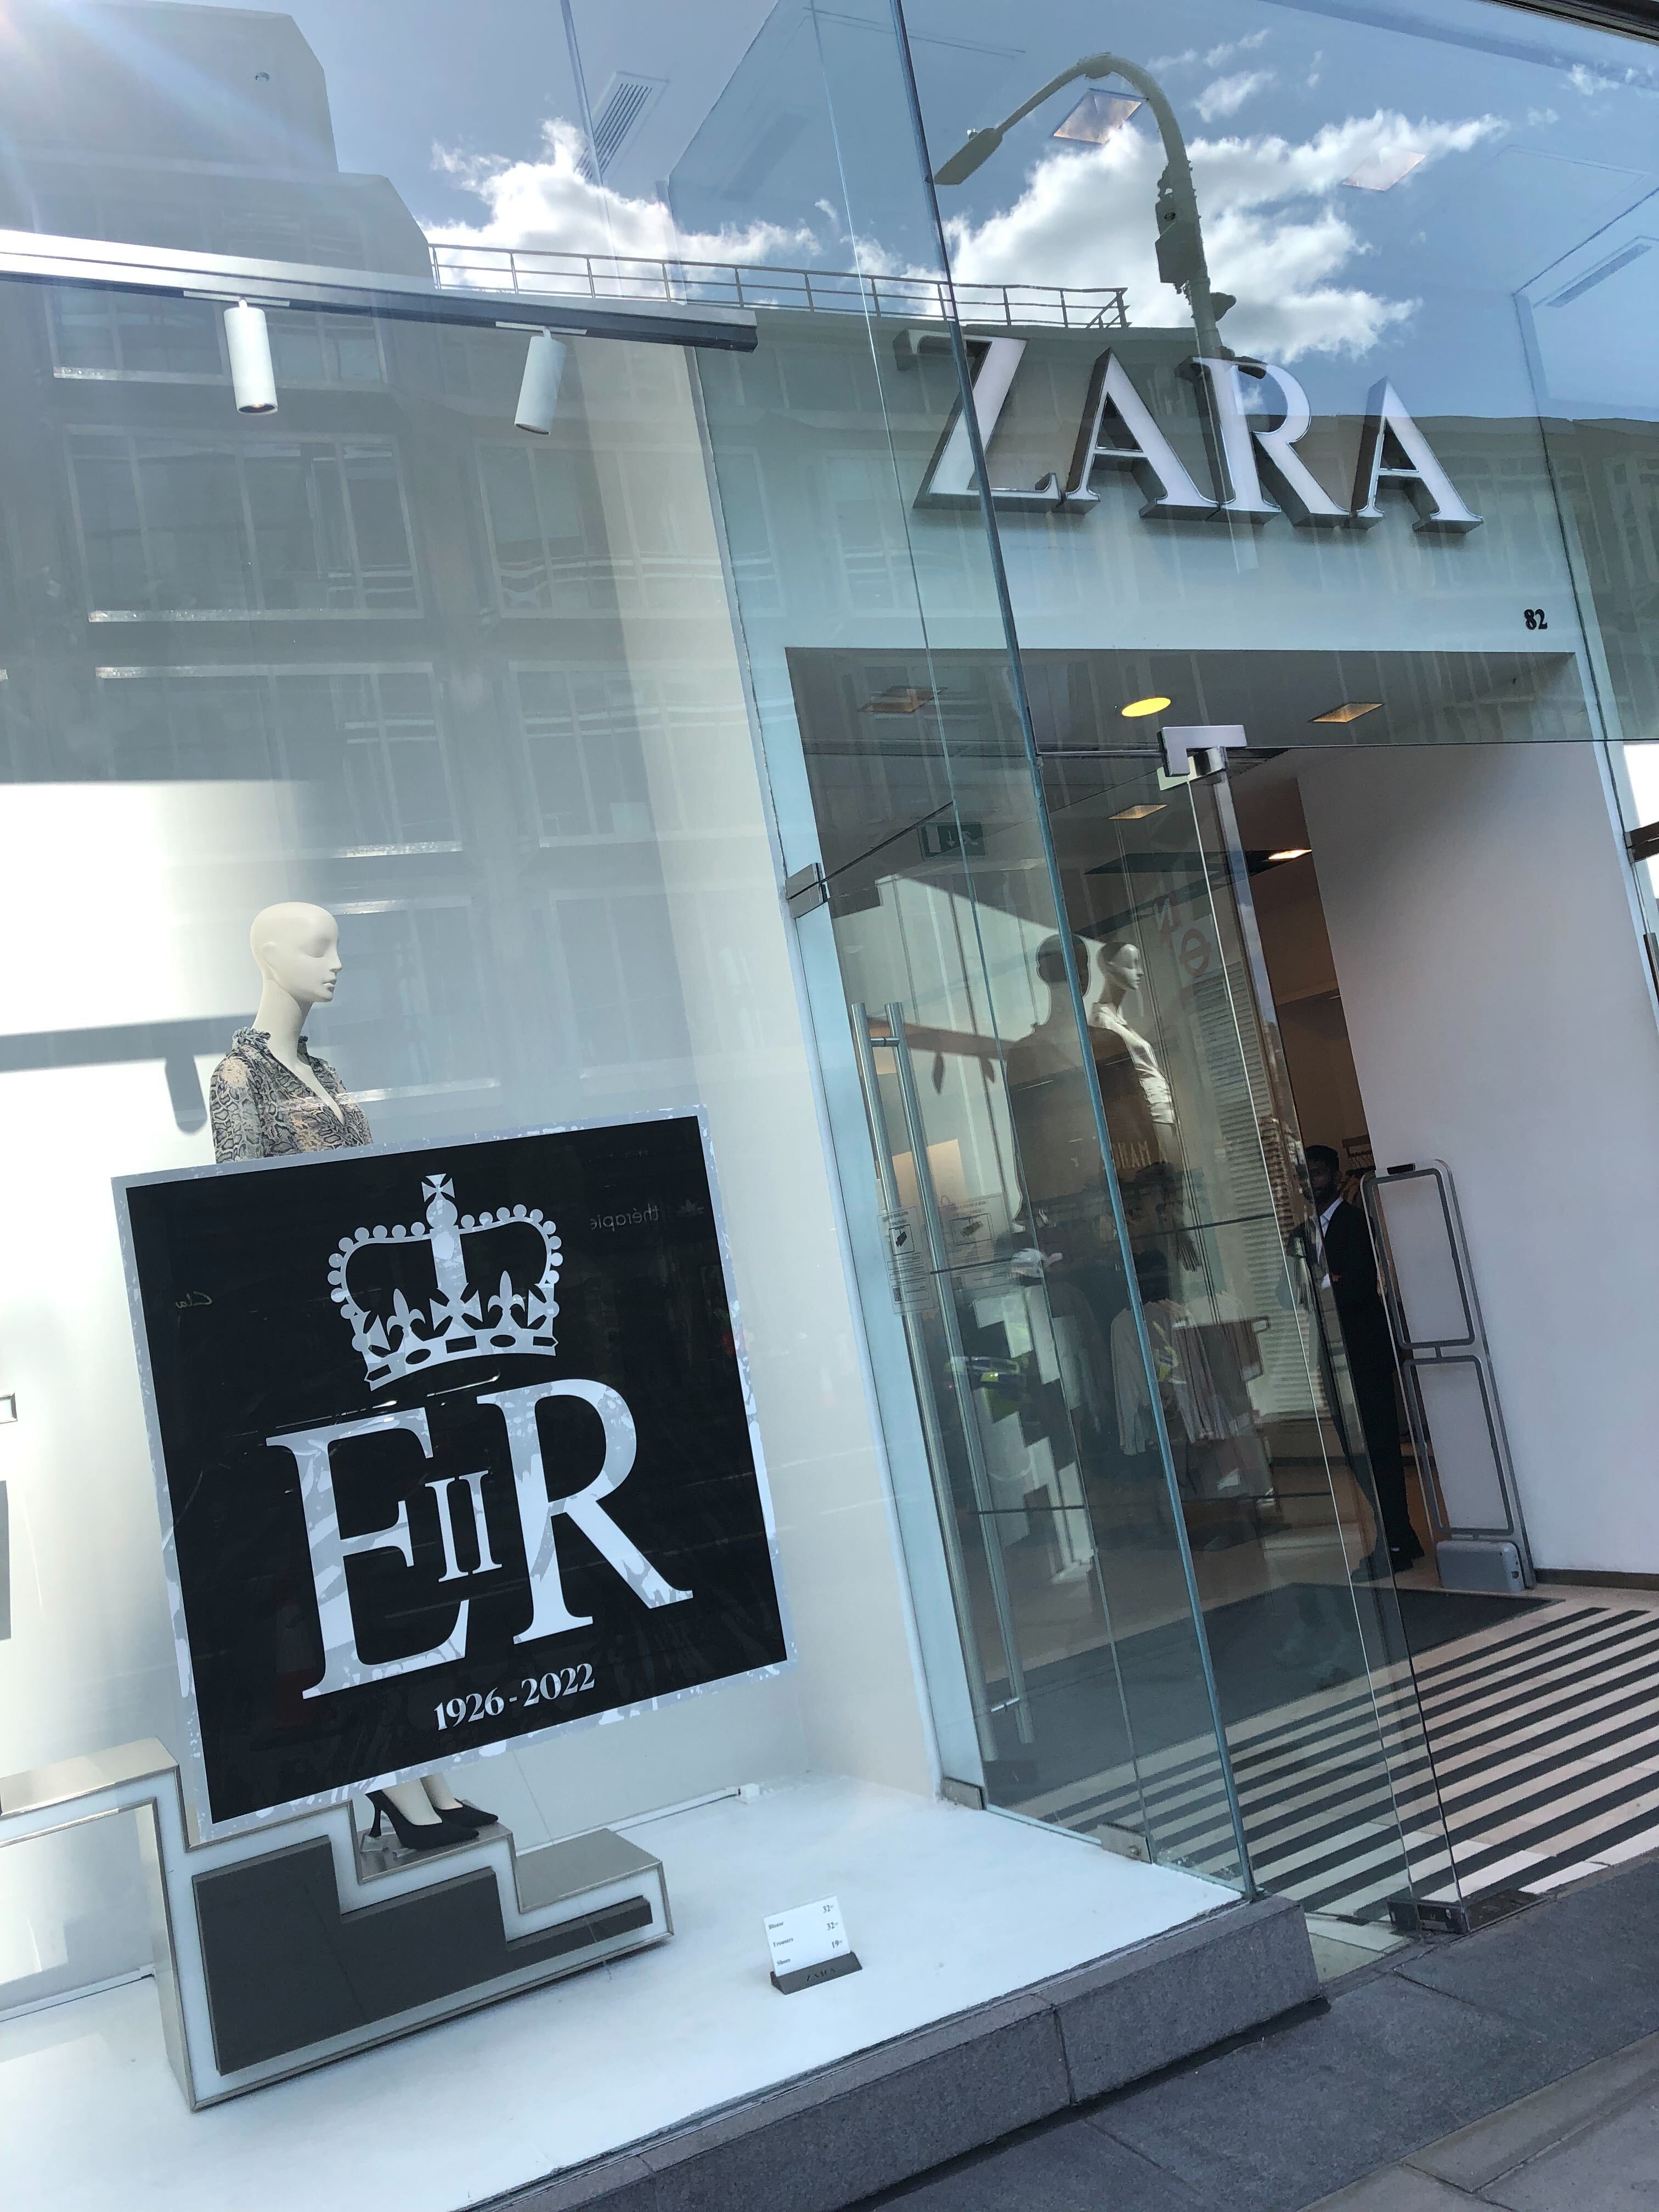 Selbst bei der spanischen Modekette "Zara" trauert man um Queen Elizabeth II..